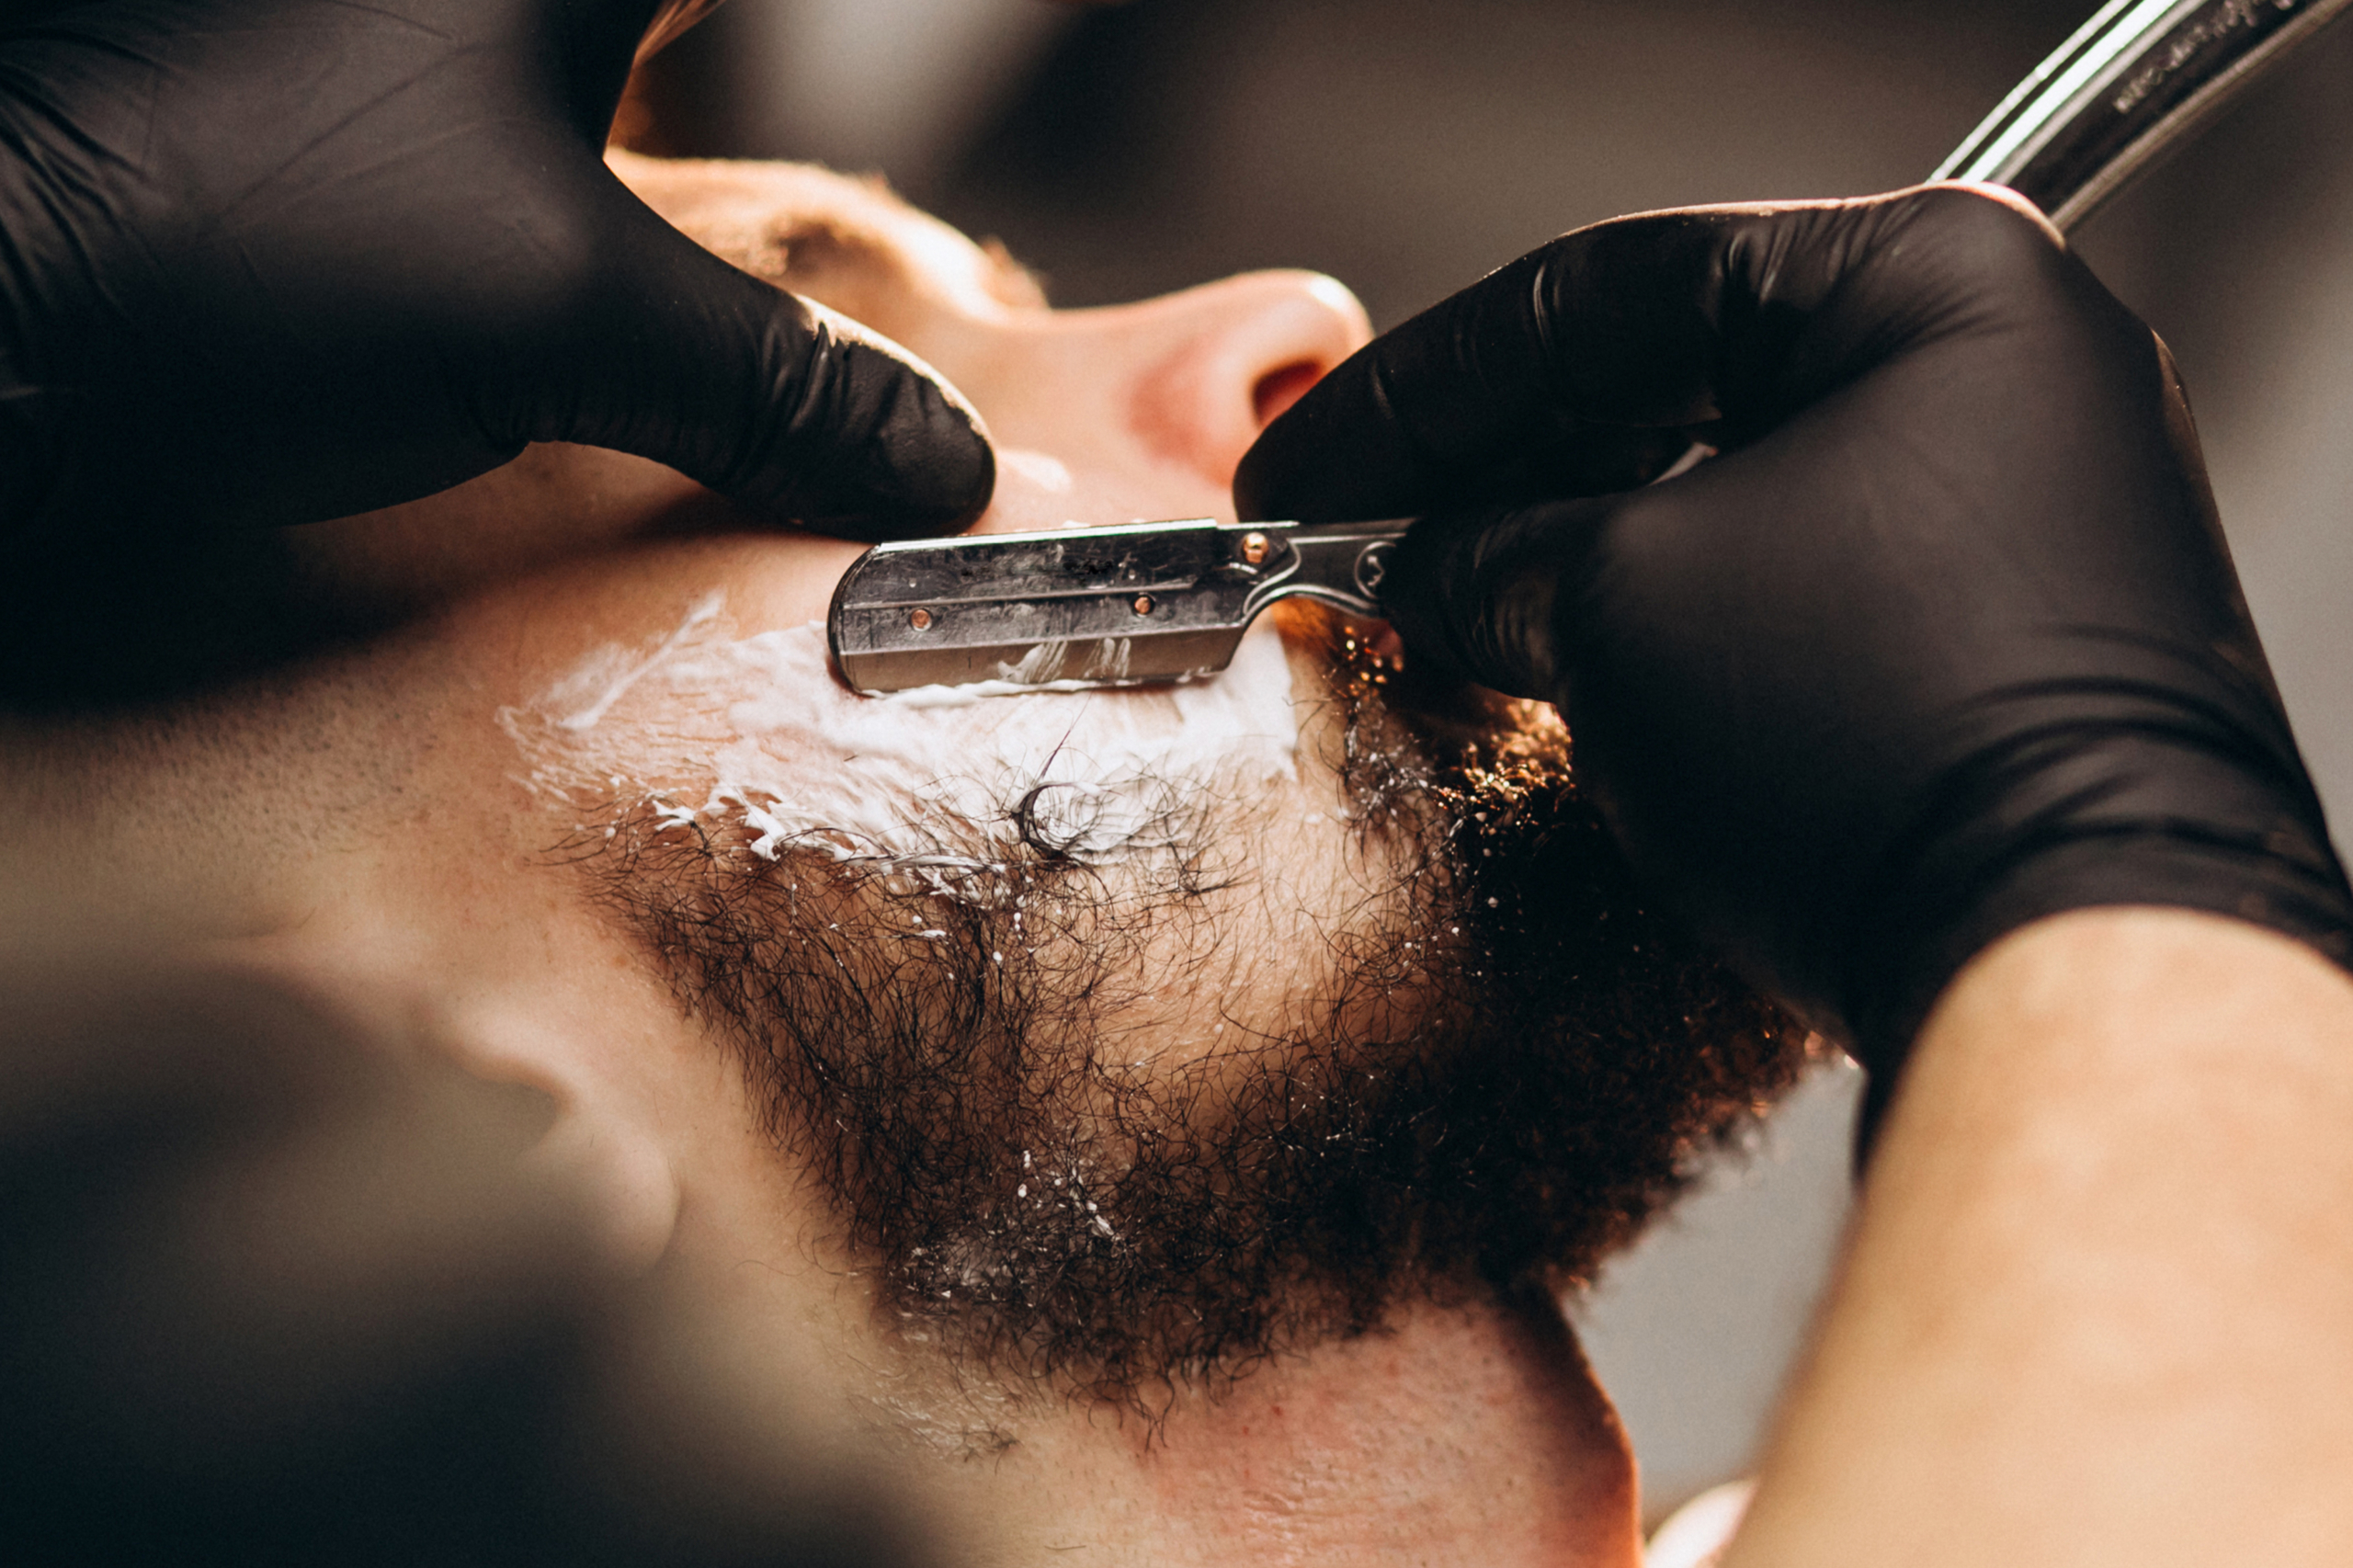 Scopri tutta la nostra selezione di prodotti da Barberia! Prenditi cura della tua barba con prodotti professionali per barbiere. La scelta dei nostri prodotti è sempre in crescita, e i nostri prezzi sono sempre super convenienti.